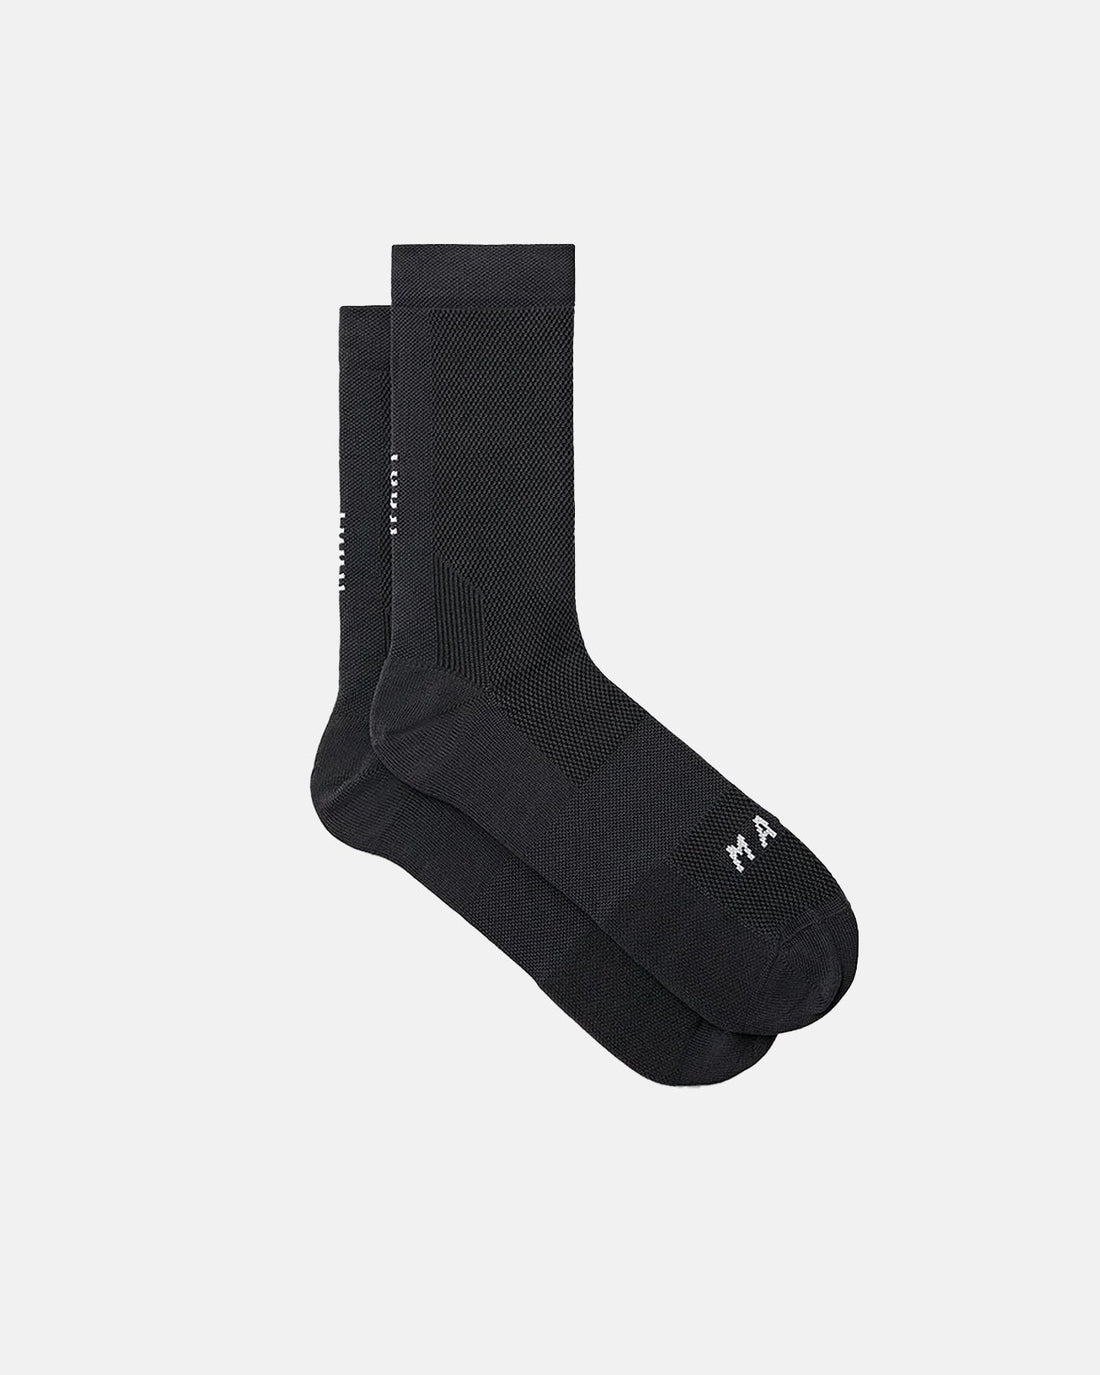 Division Sock - Black/Black